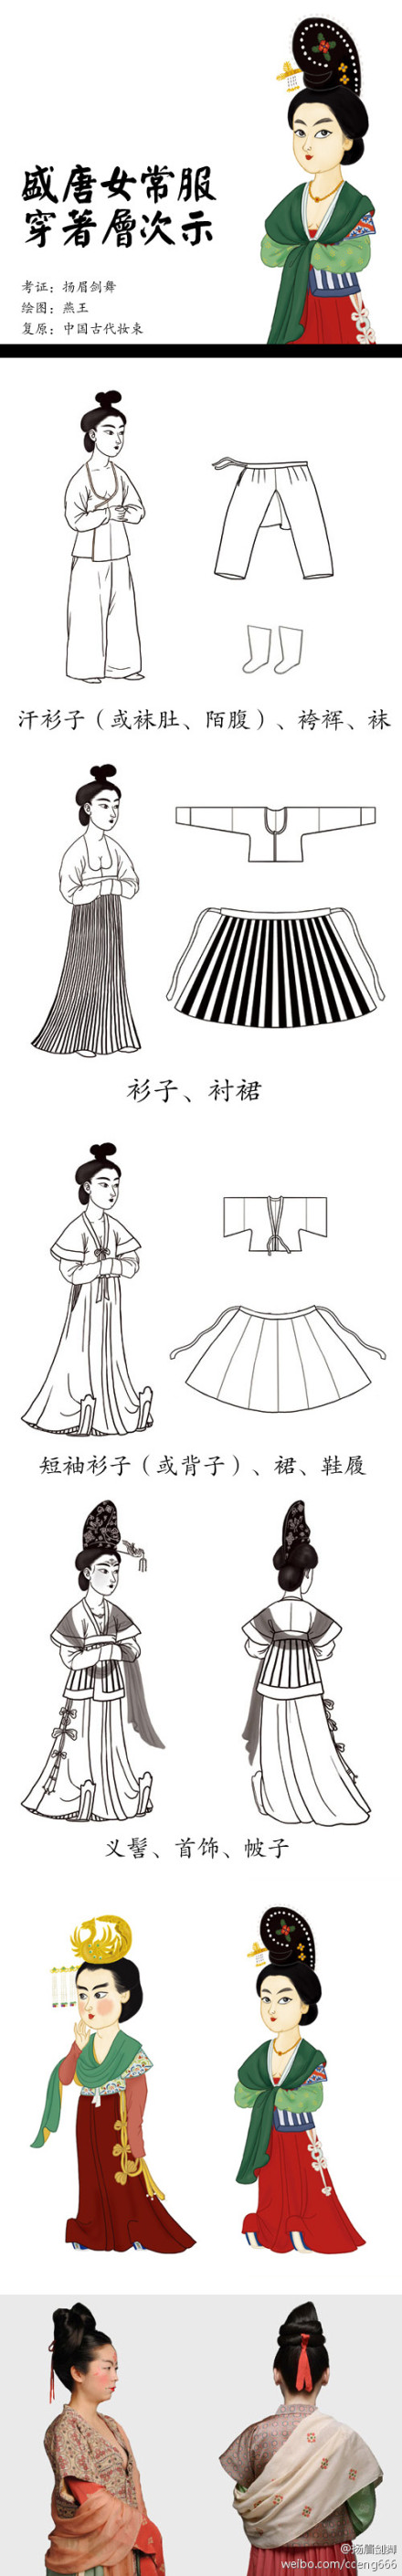 唐朝穿衣指南之二】我们熟悉的女装"襦裙,披帛,半臂,在唐代语境下